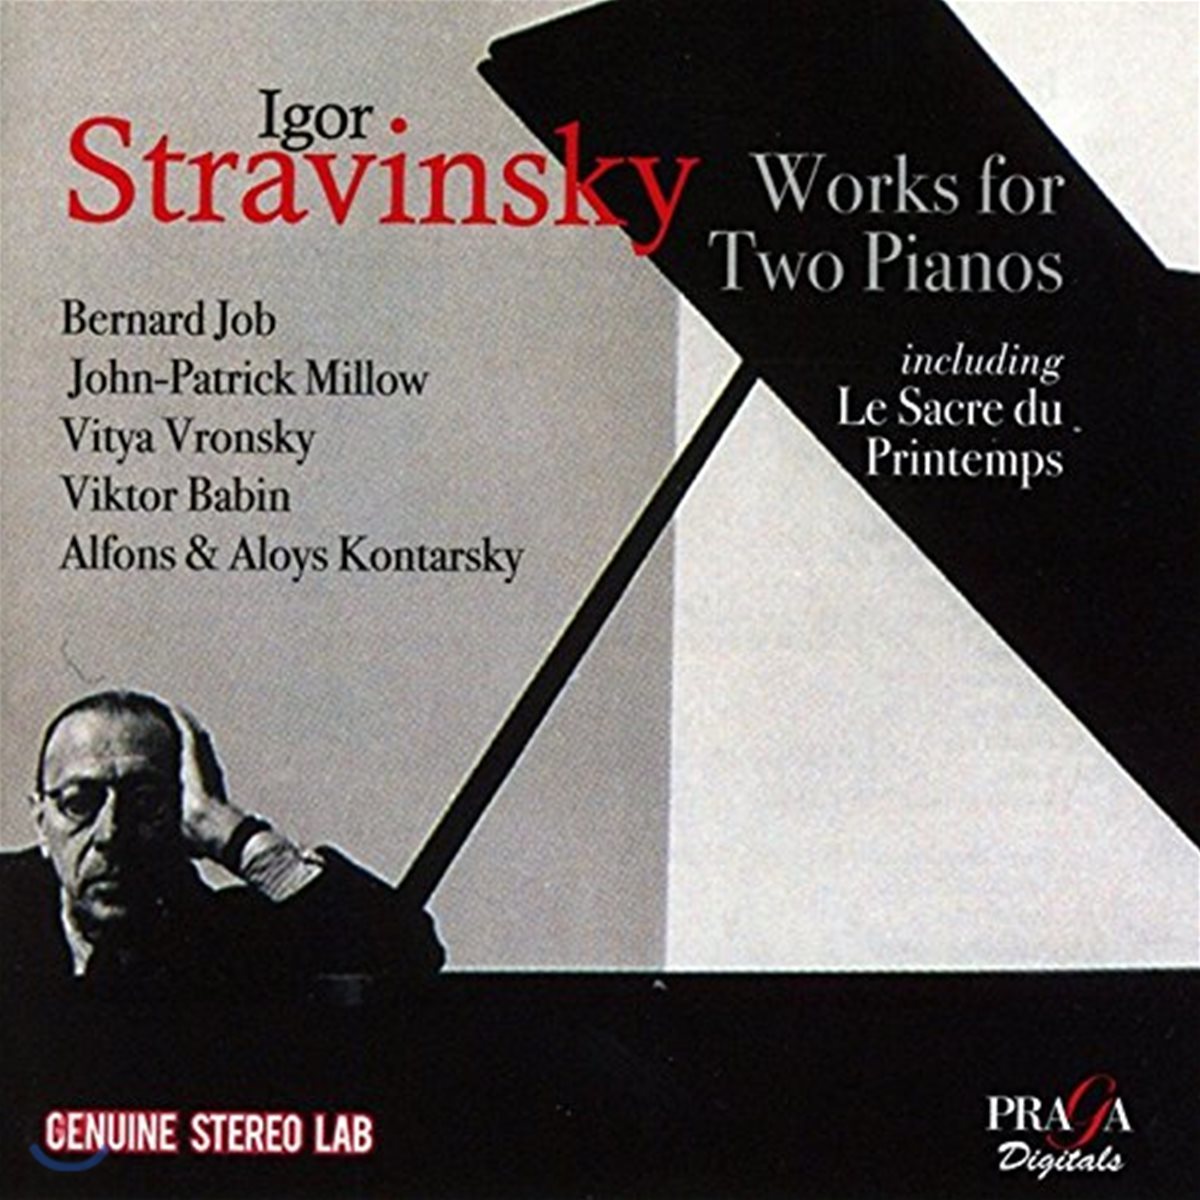 Alfons &amp; Aloys Kontarsky 스트라빈스키: 두 대의 피아노를 위한 작품집 - 봄의 제전 외 (Stravinsky: Works for Two Pianos, including Le Sacre du Printemps)